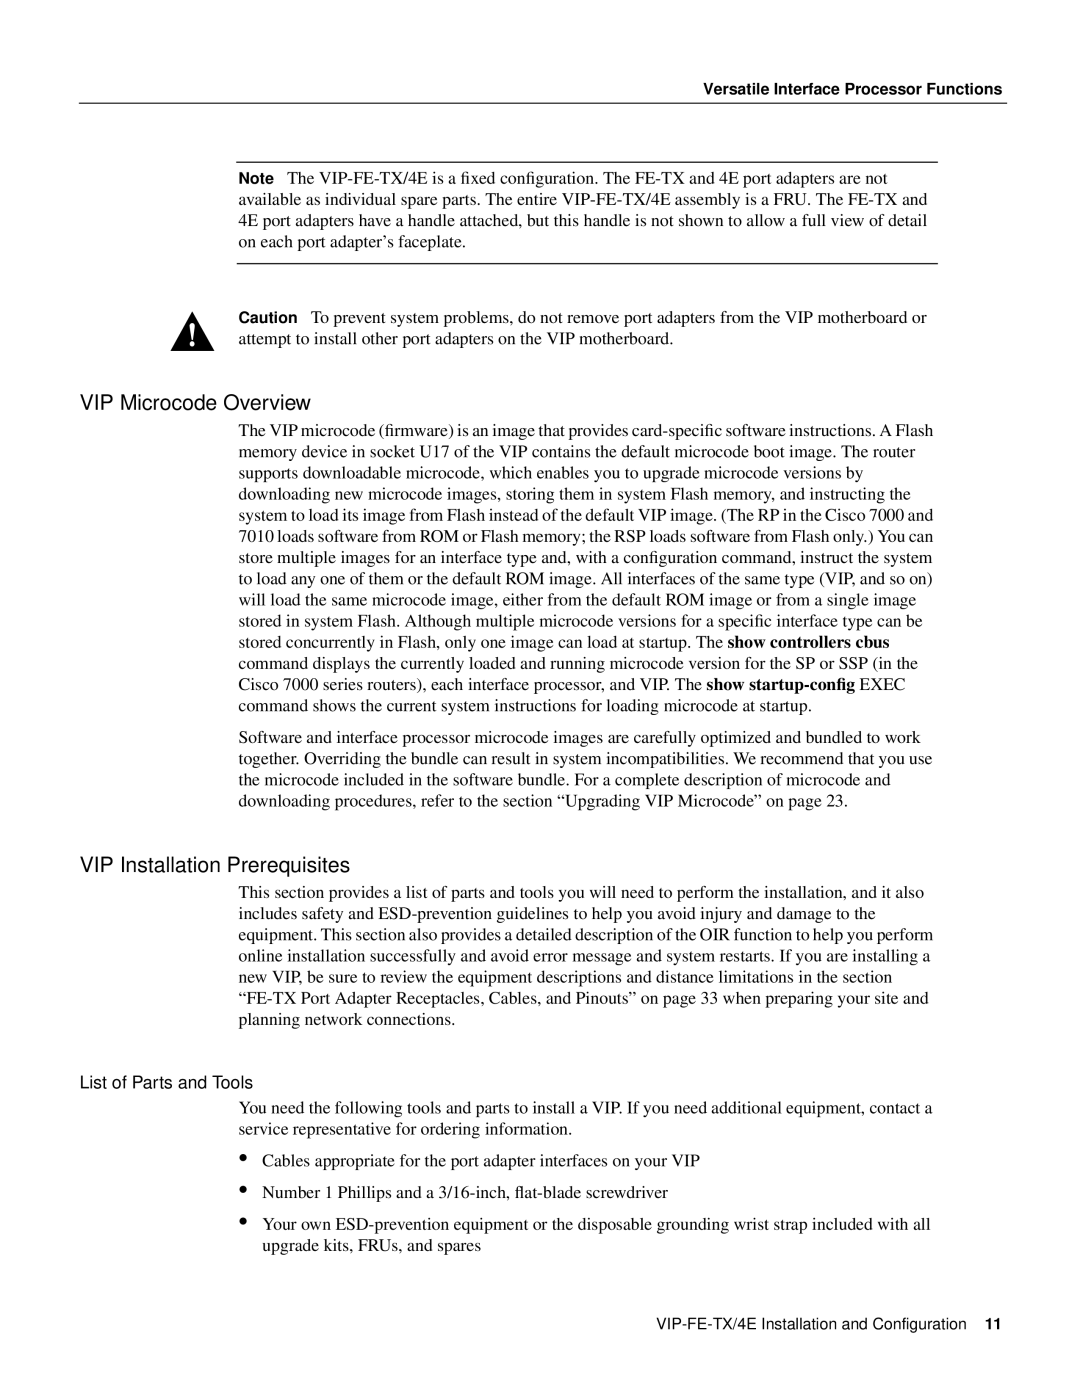 Cisco Systems VIP-FE-TX/4E manual VIP Microcode Overview, VIP Installation Prerequisites 